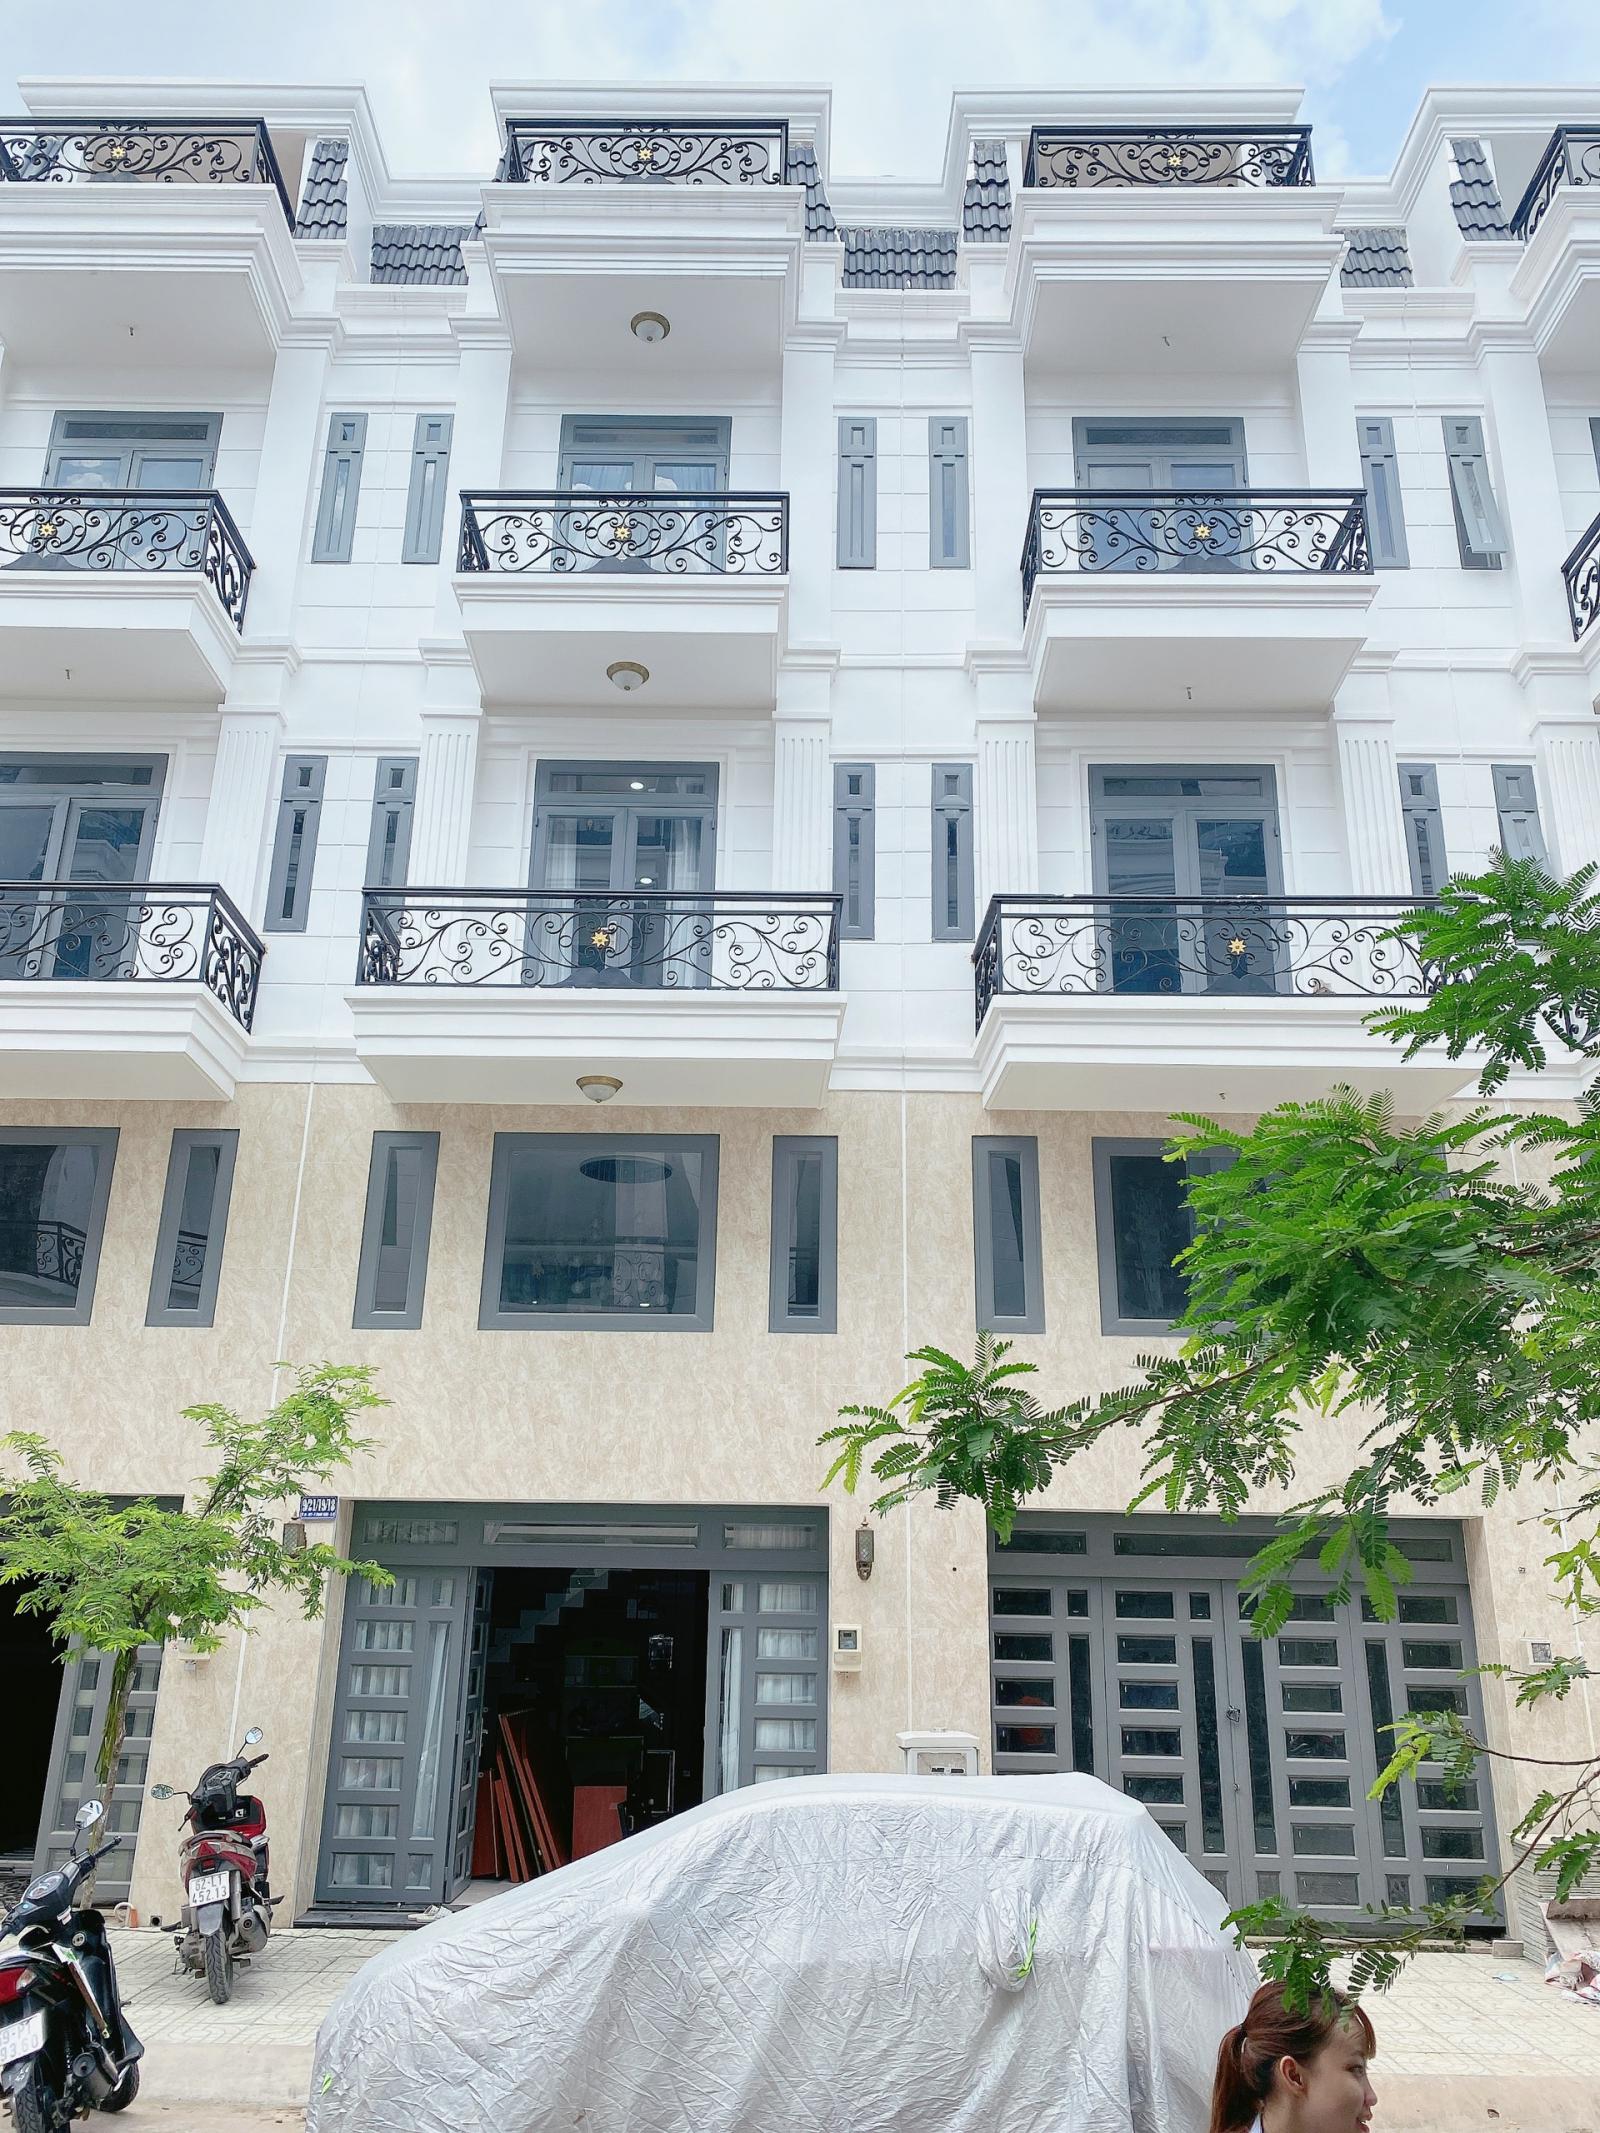 Bán nhà đường Tô Ngọc Vân, Quận 12, (gần Gò Vấp), 1 trệt, 1 lửng , 3 lầu, giá 4 tỷ 500 triệu. LH chính chủ : 0908714902 An.